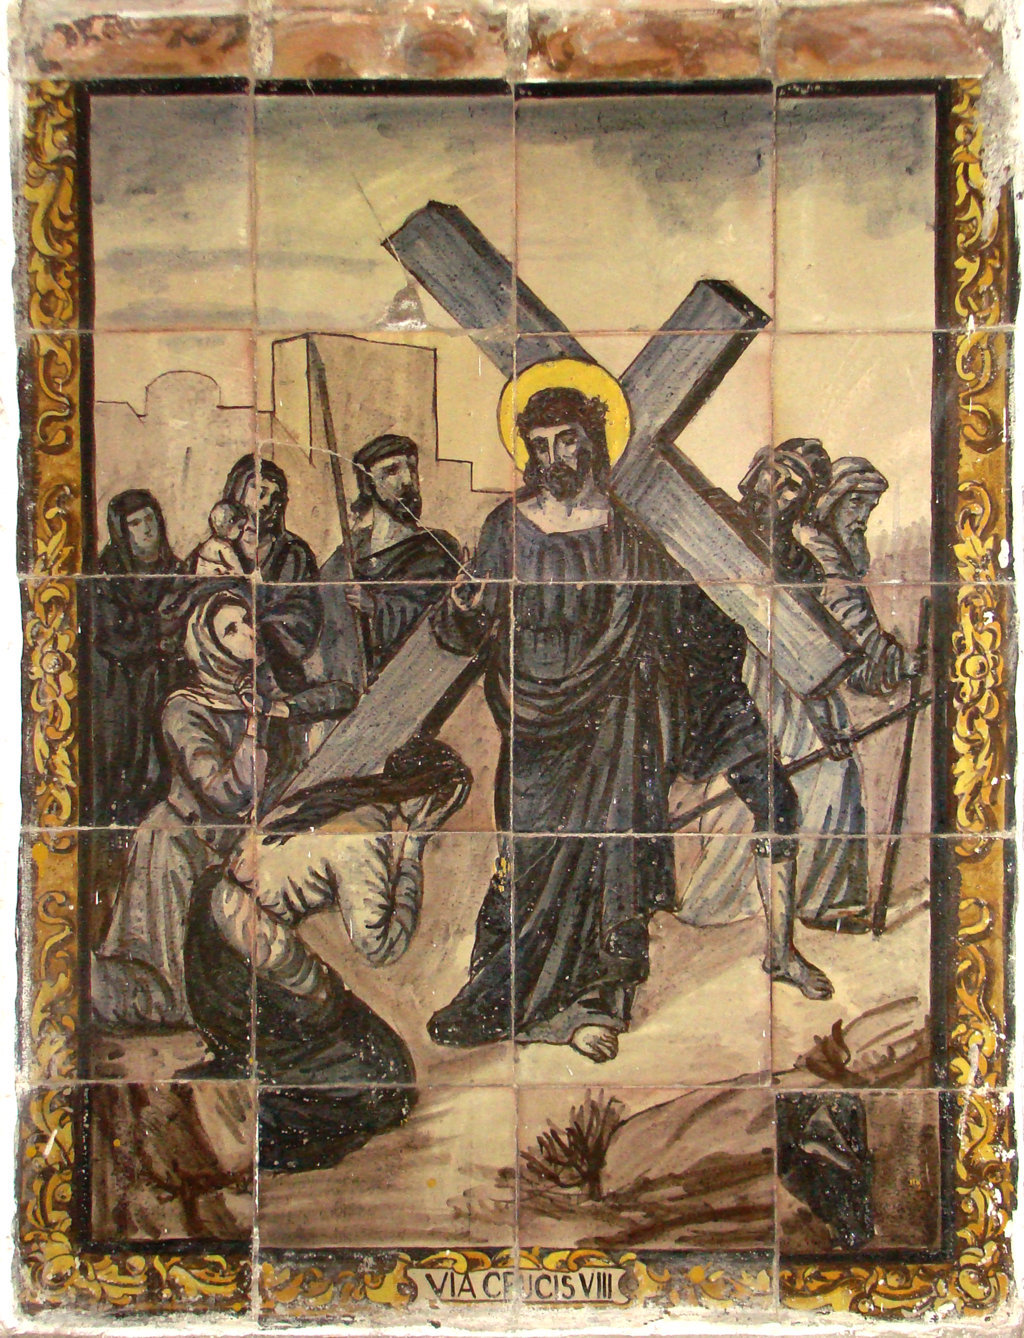 02836. Retablo cerámico. Escena de Vía Crucis. Octava estación. Iglesia de San Juan de la Palma. Sevilla.